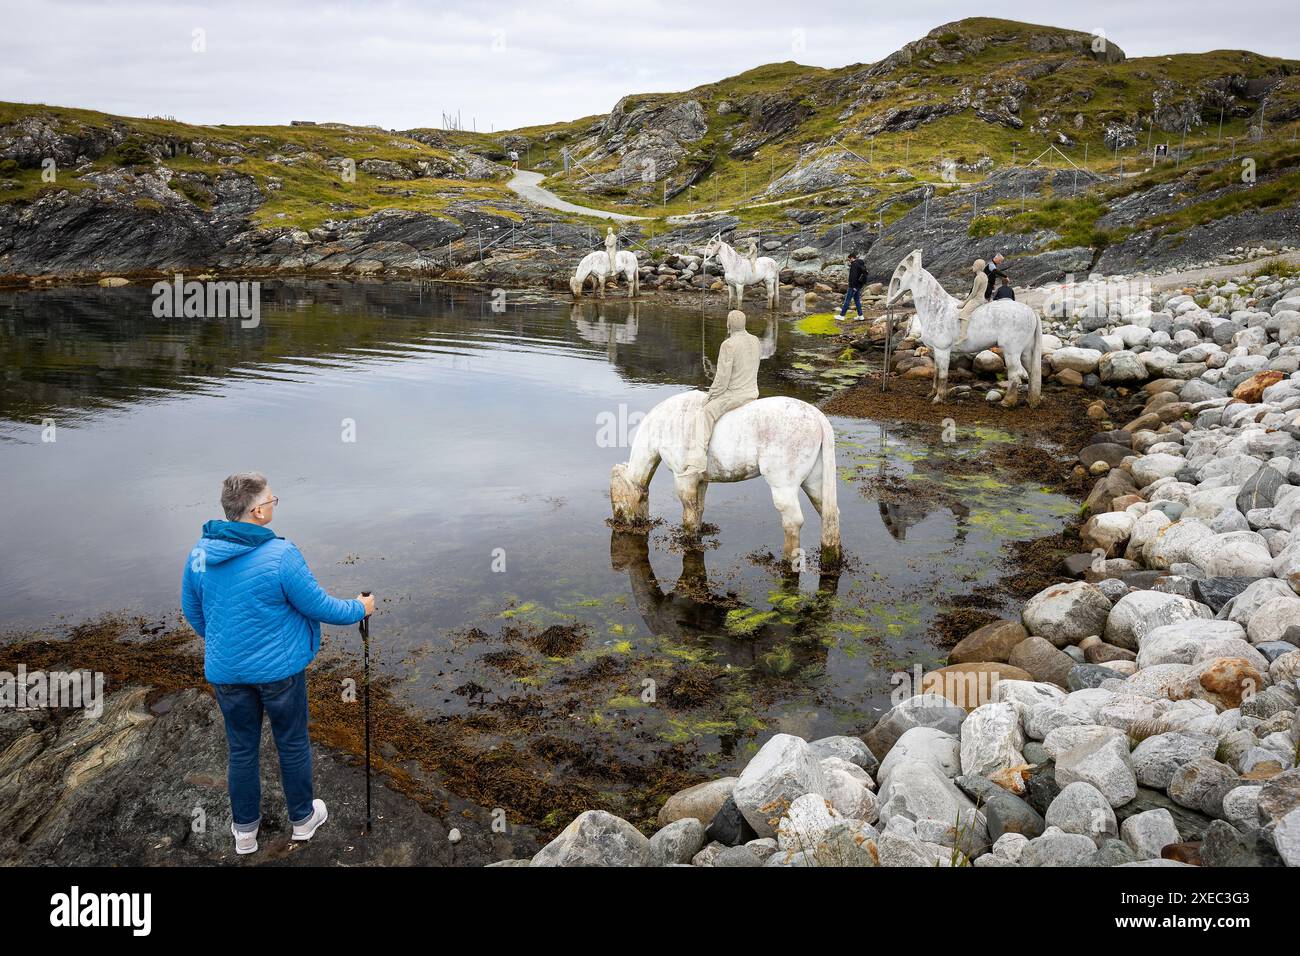 La scultura della marea nascente di cavalli nell'acqua, creata dall'artista Jason DeCaires Taylor, a circa 5 km dal centro di haugesund, Norvegia. Foto Stock